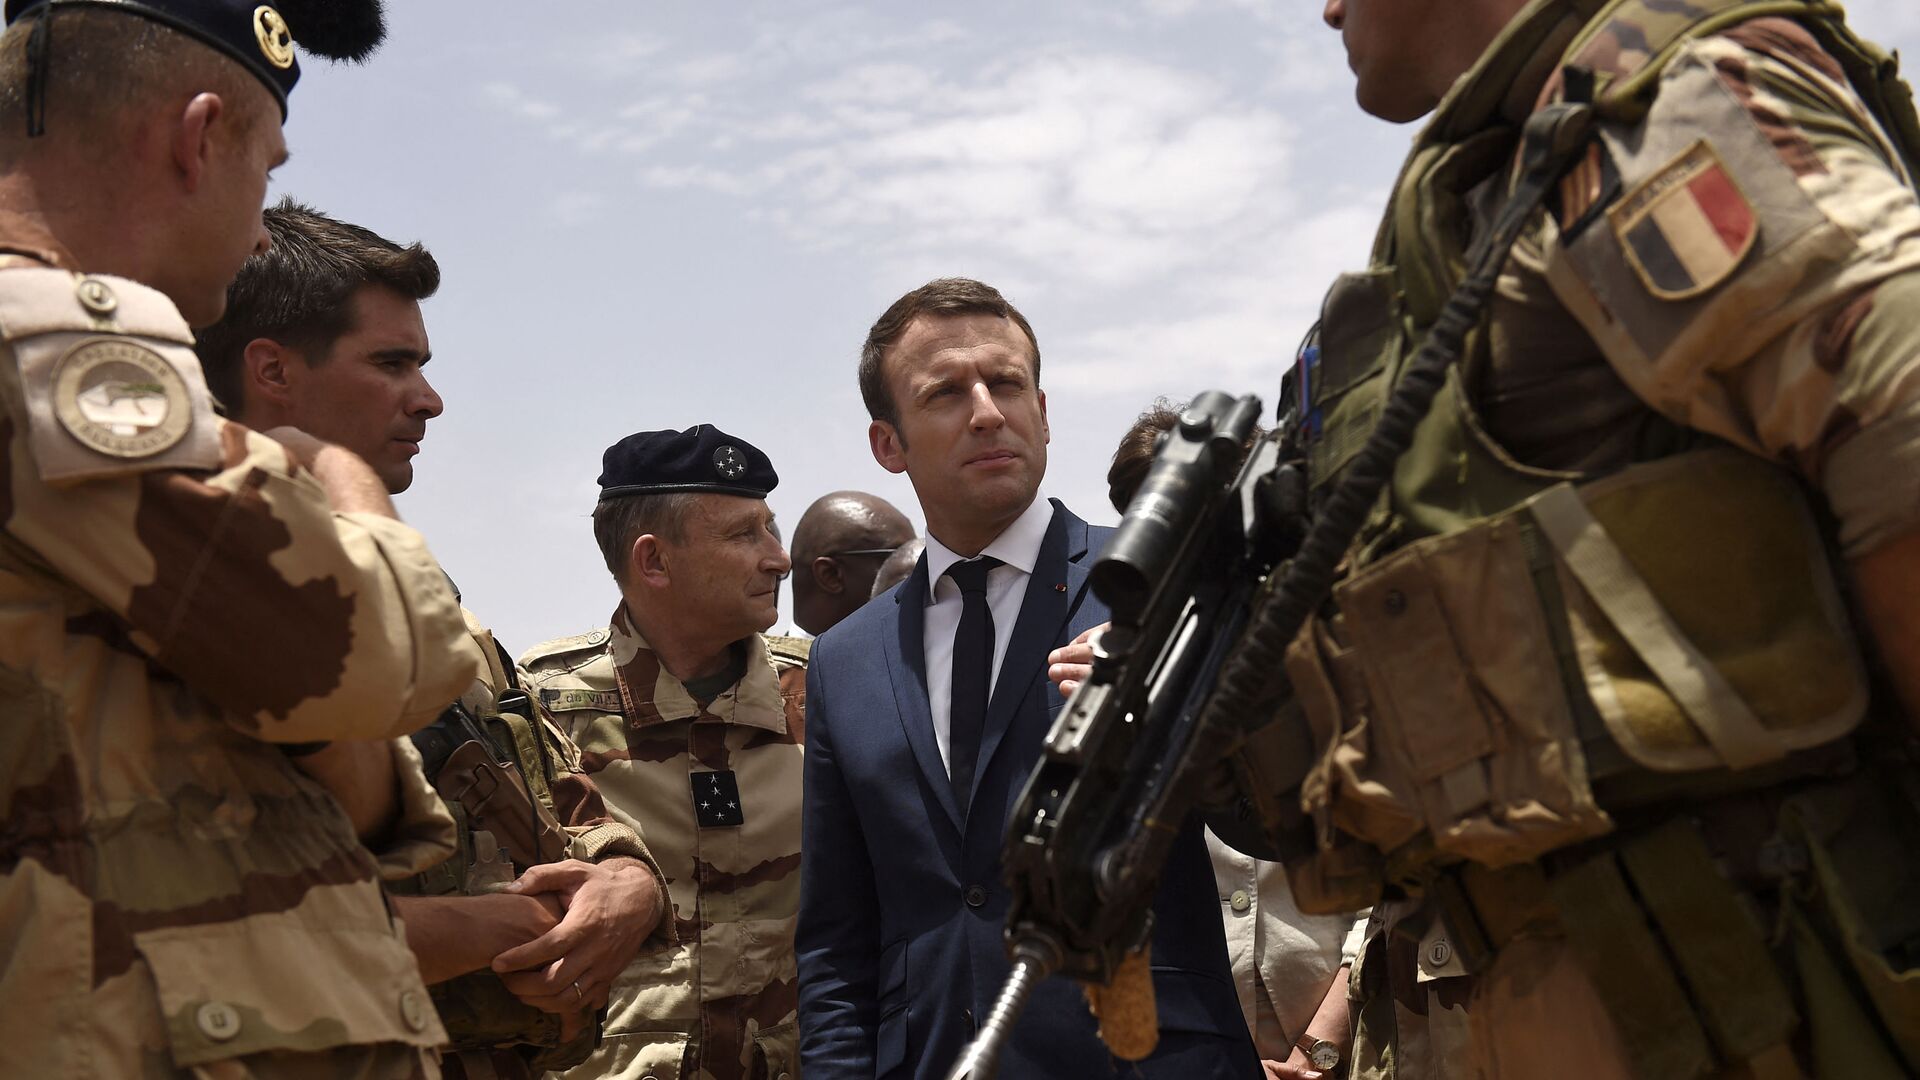 Le Président Emmanuel Macron rend visite aux hommes de l’opération Barkhane à Gao, 19 mai 2017 - Sputnik Afrique, 1920, 30.11.2021